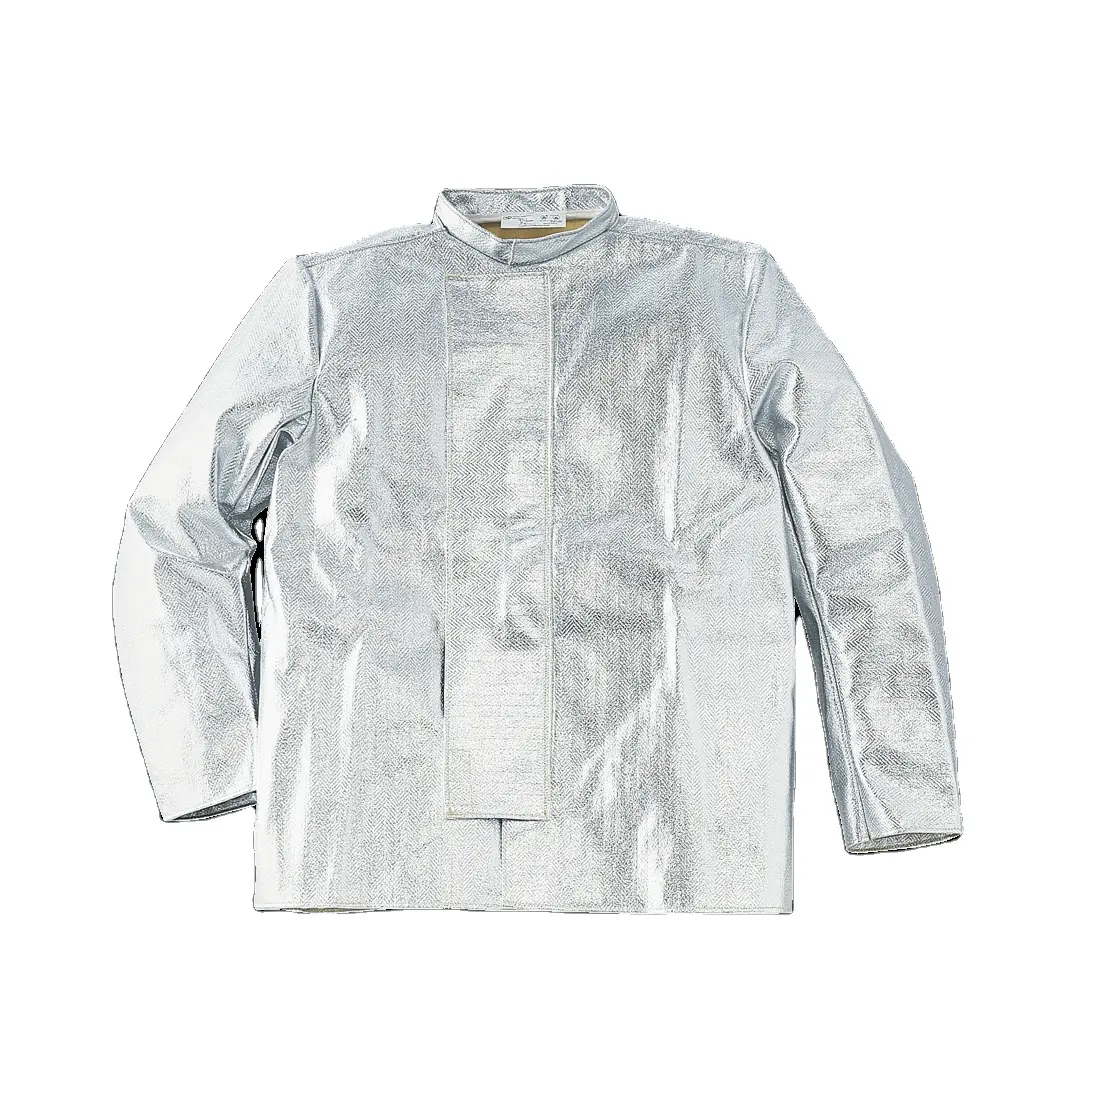 Высококачественная куртка из алюминиевой части арамидного волокна с китайским воротником и закрытой металлической застежкой на пуговицах спереди с клапаном